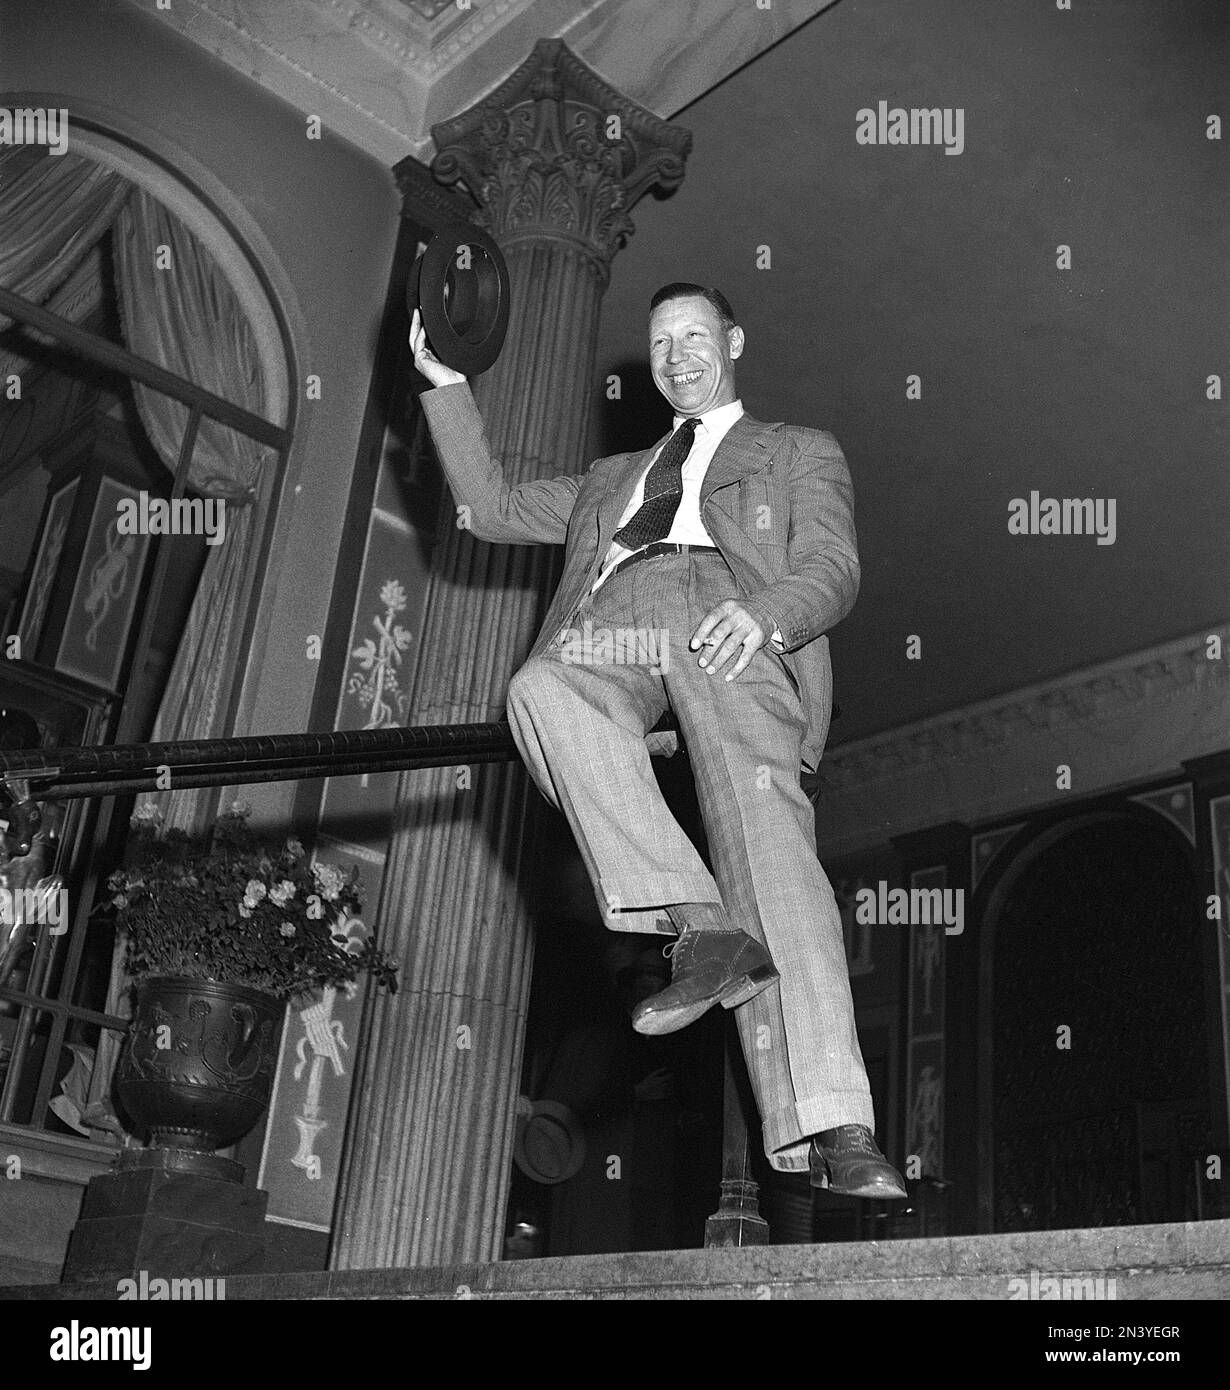 George Formby. Chanteur britannique, acteur connu sous le nom d'homme ukulele. 1904-1961. Il était l'acteur britannique le plus payé 1940. Photo ici lorsqu'il a visité Stockholm Suède au Grand Hotel où il est resté avec sa femme. 1946 réf. T137-2 Banque D'Images